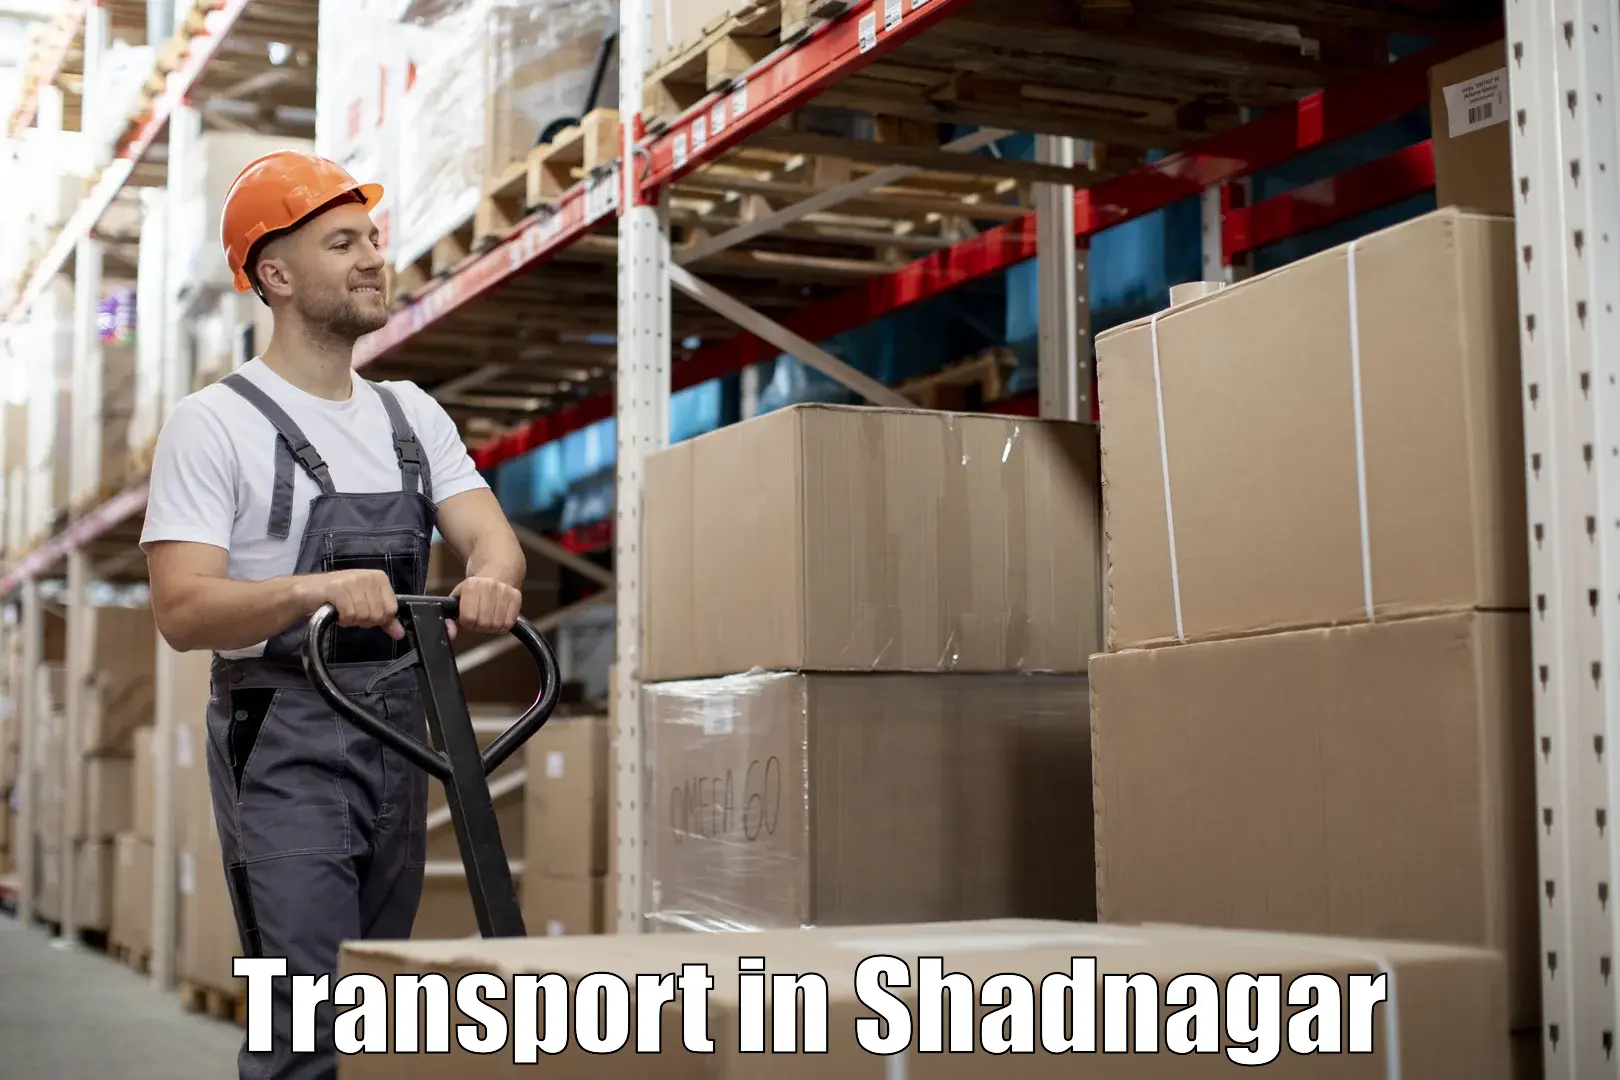 Daily transport service in Shadnagar